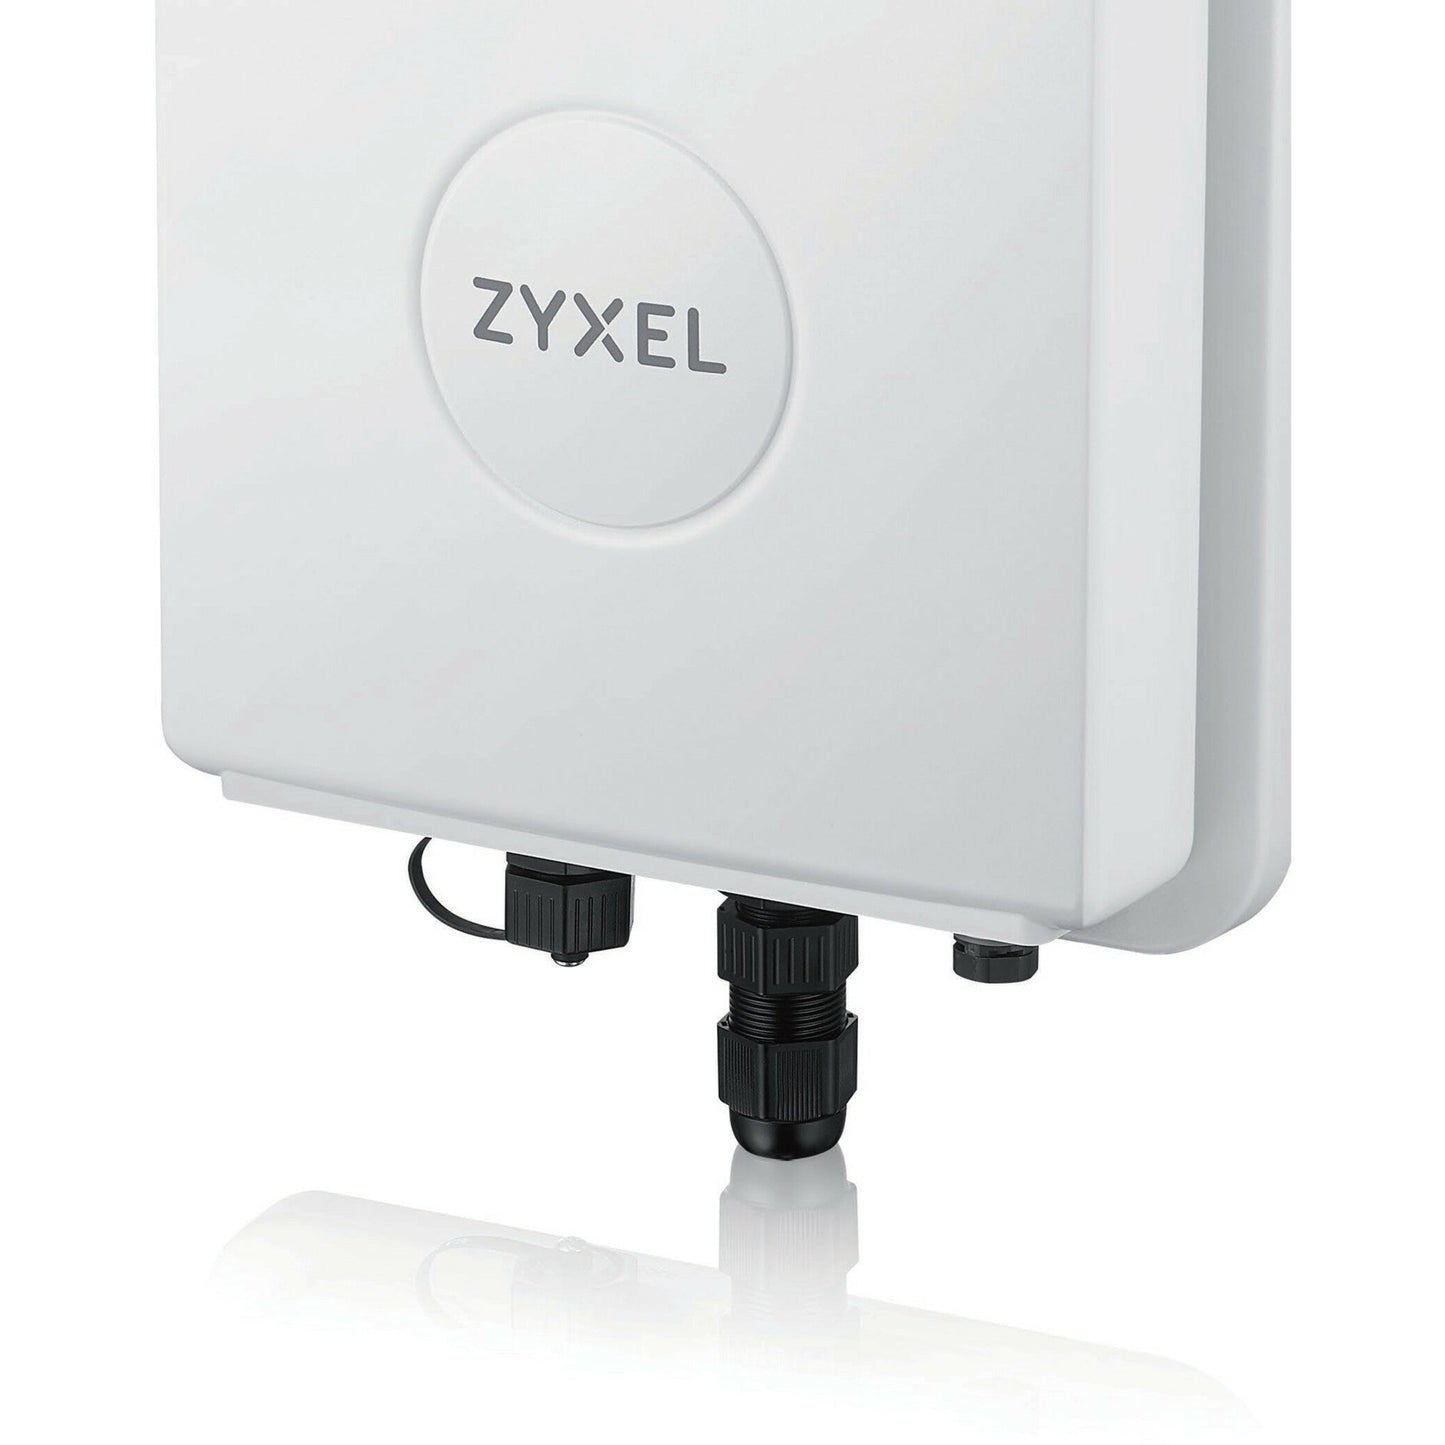 ZYXEL WAC6552D-S IEEE 802.11 a/b/g/n/ac 1.14 Gbit/s Wireless Access Point